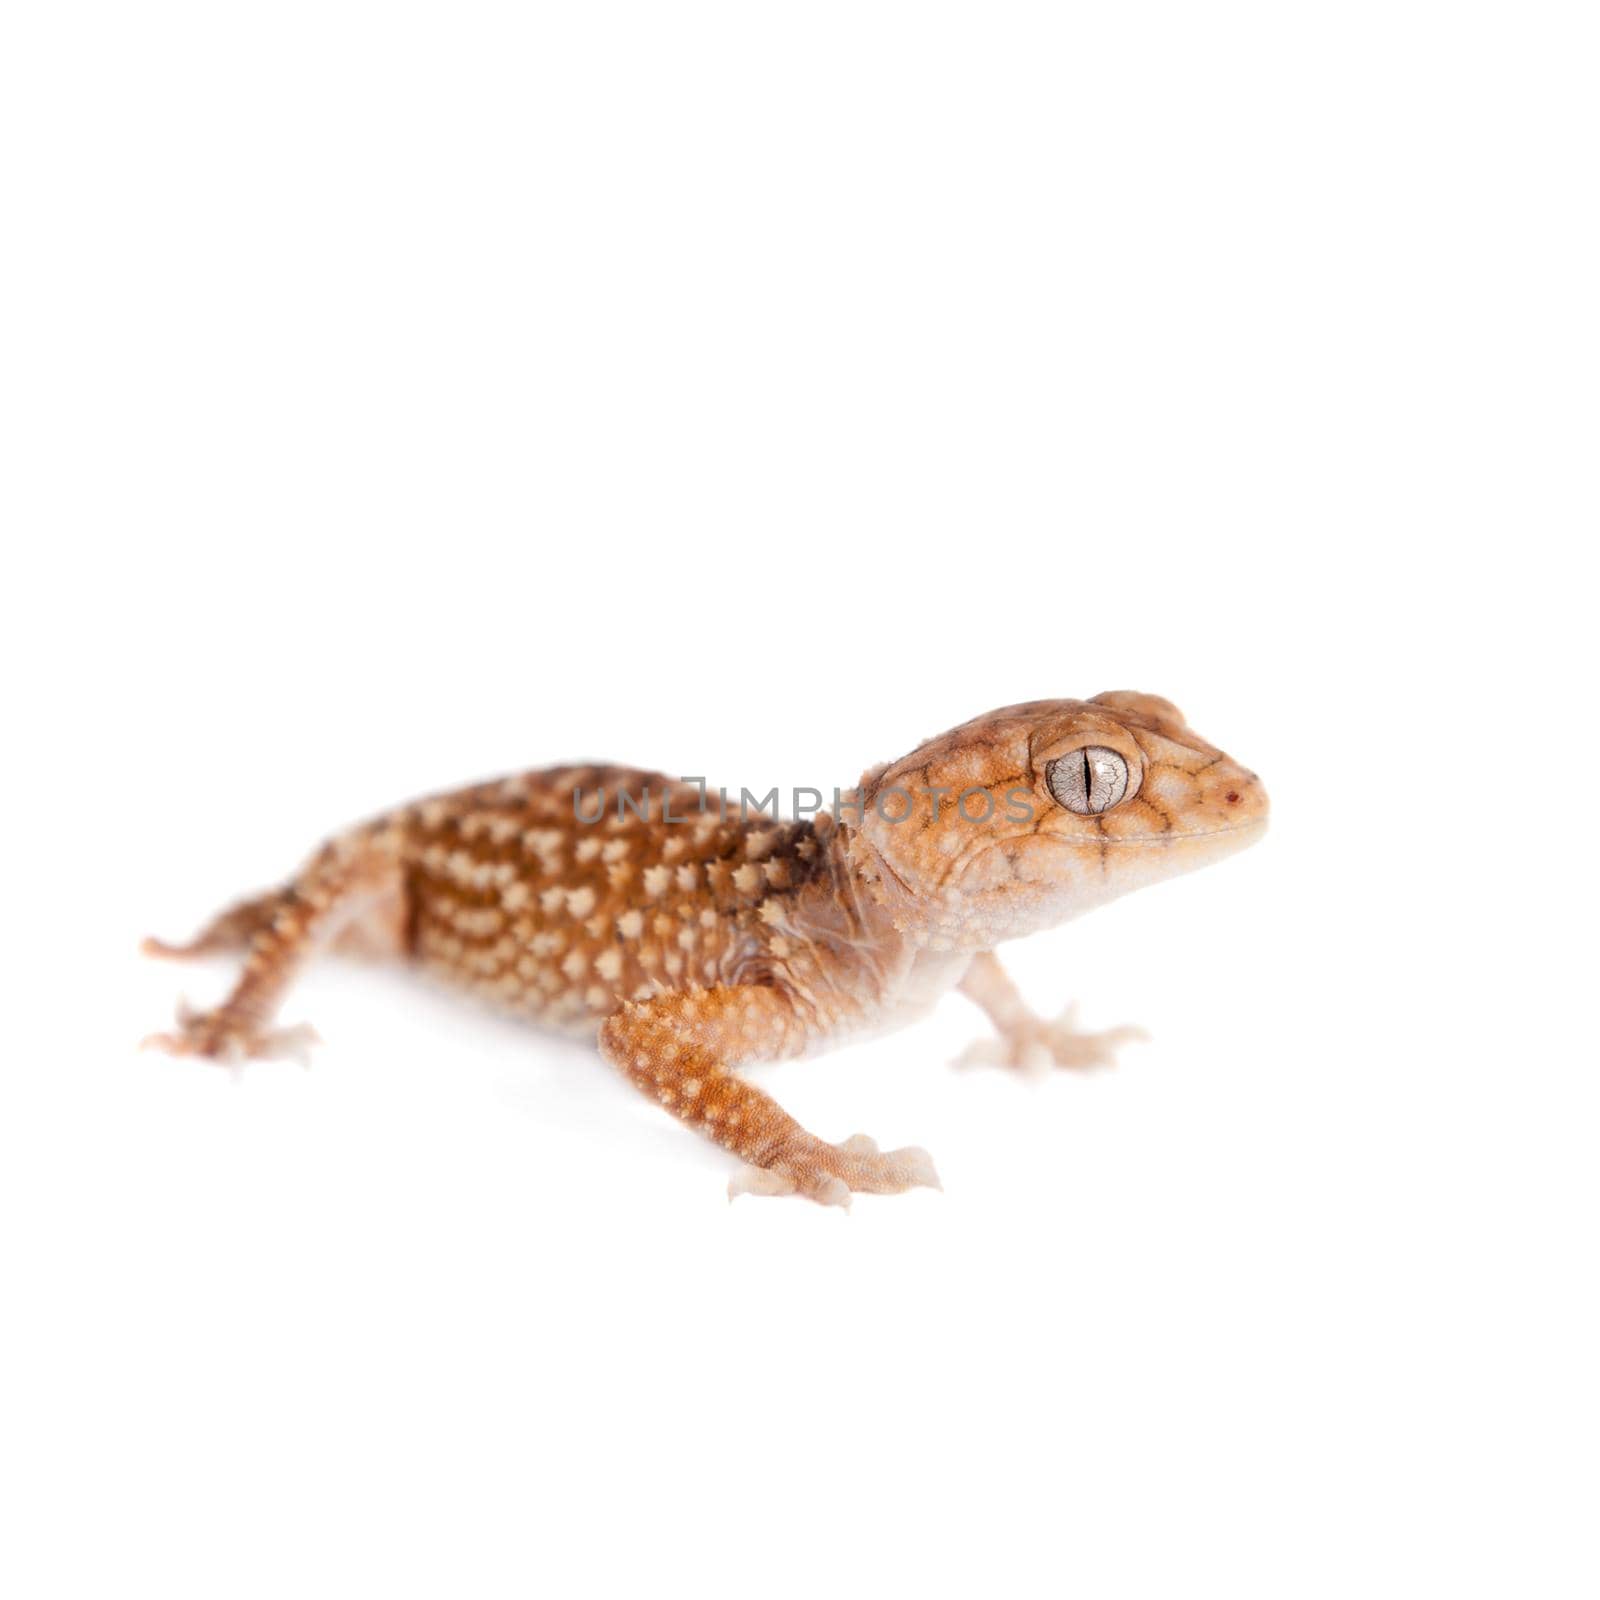 Rough Knob-tailed Gecko, Nephrurus amyae, isolated on white background